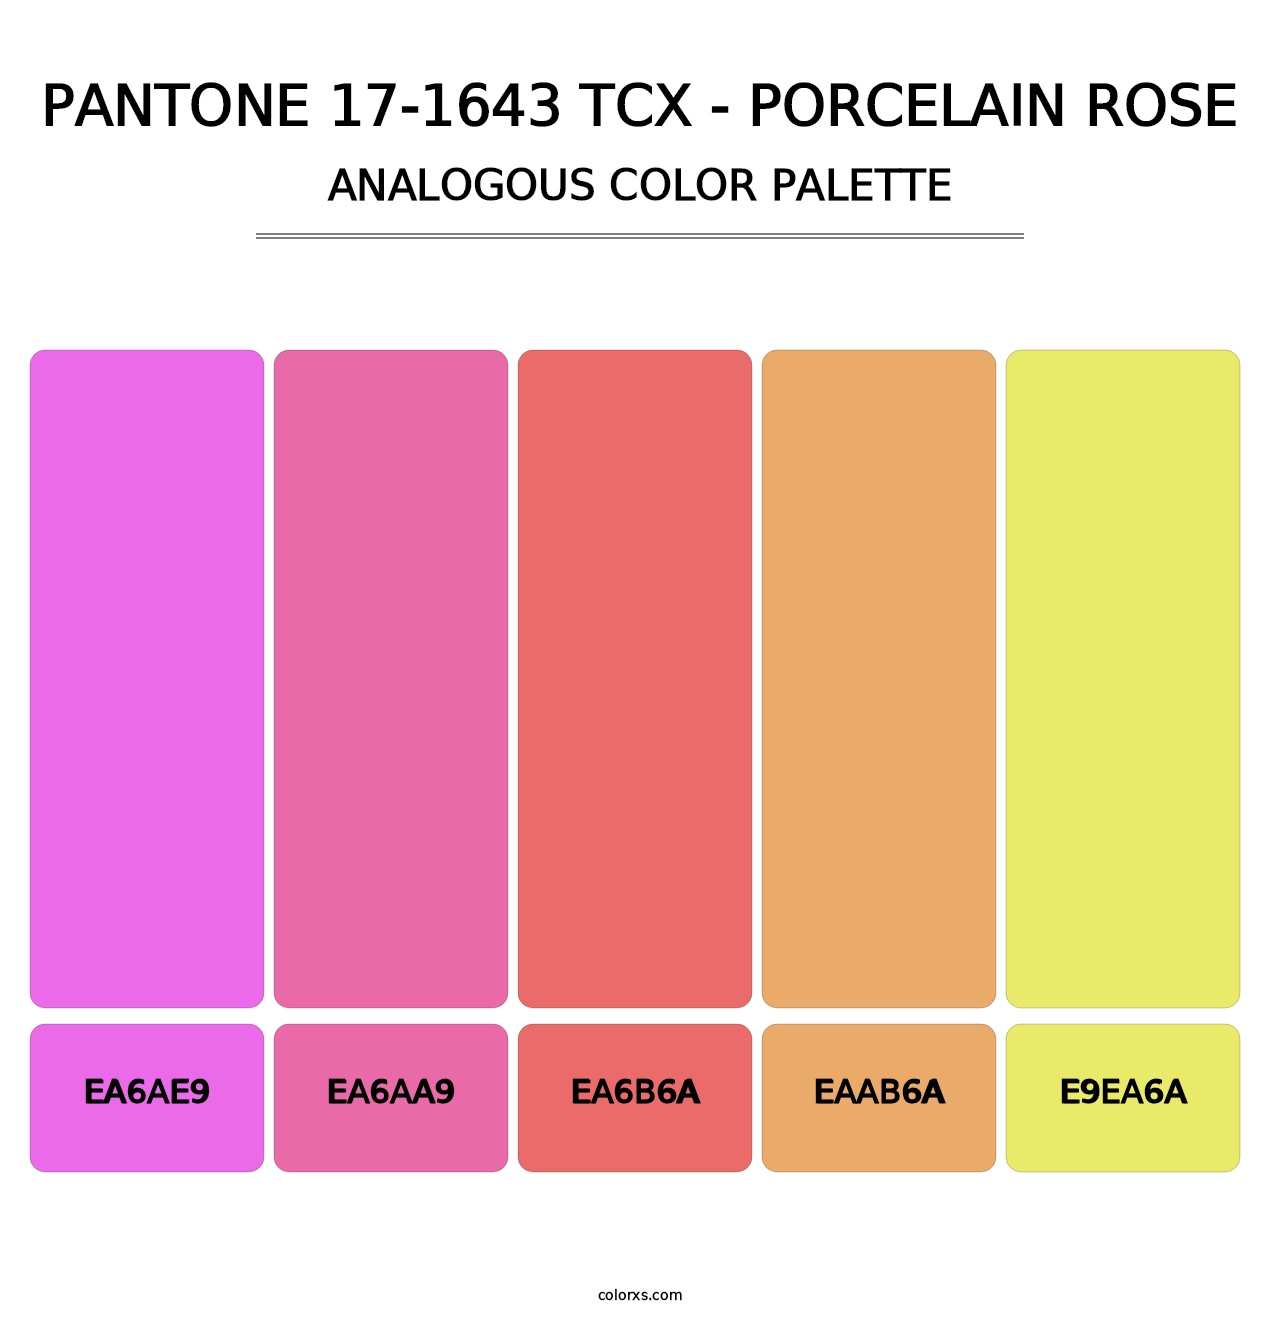 PANTONE 17-1643 TCX - Porcelain Rose - Analogous Color Palette